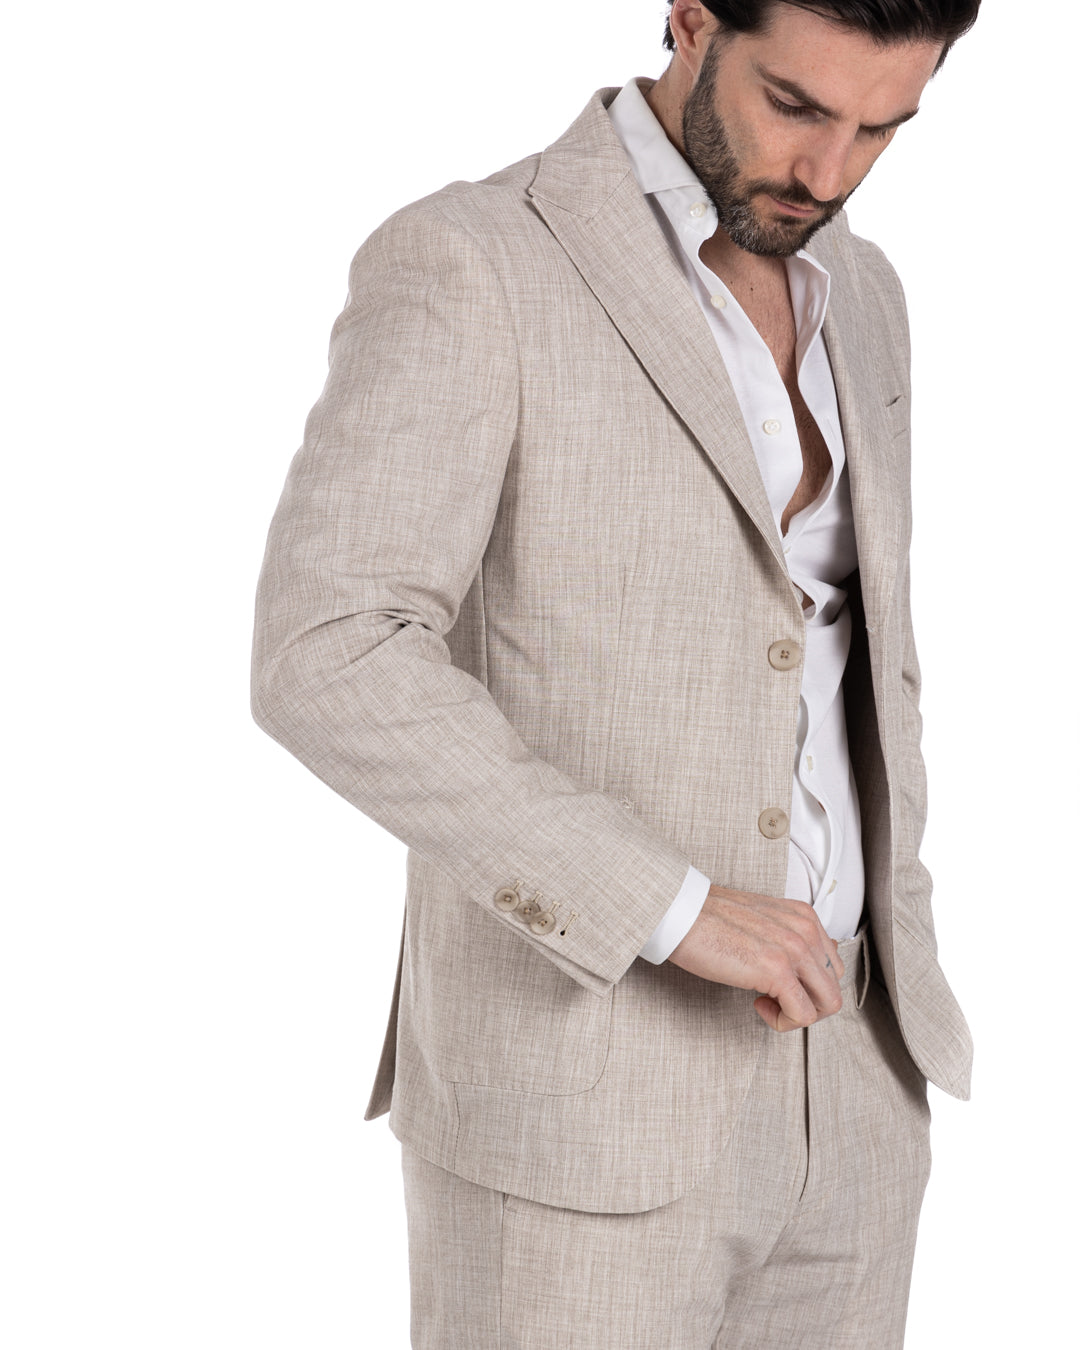 Lipari - beige single-breasted suit